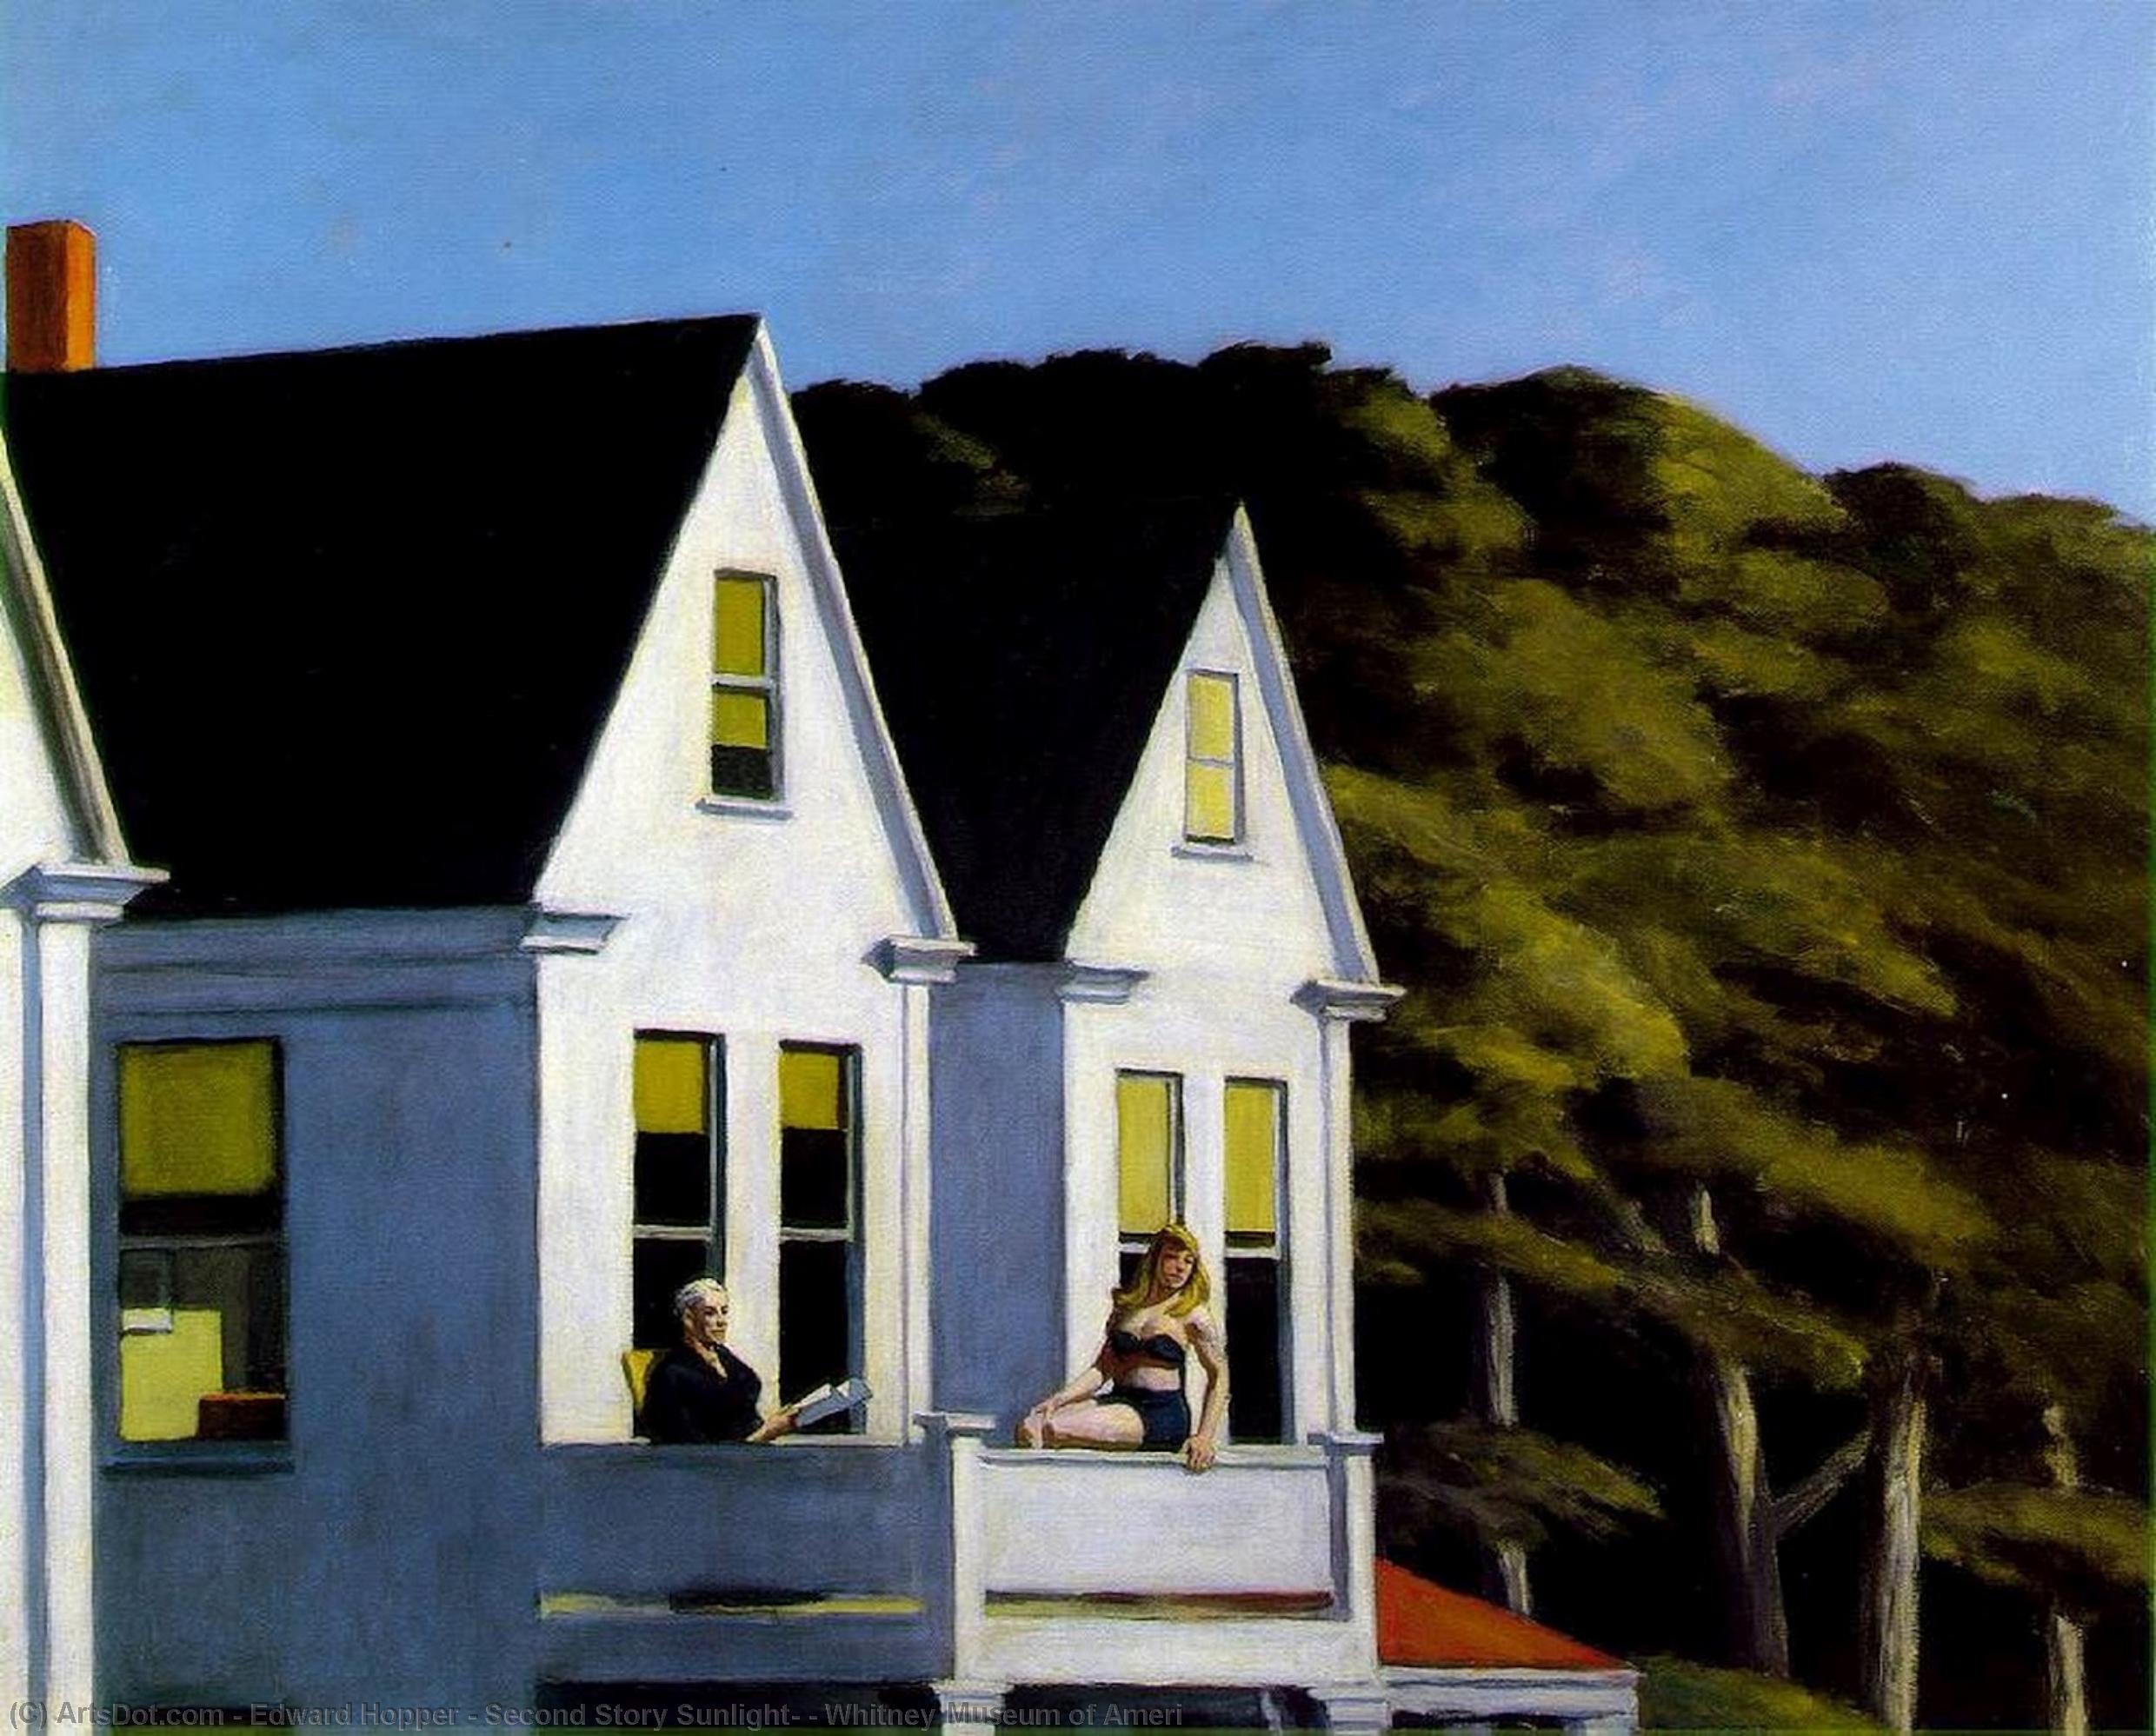 Wikoo.org - موسوعة الفنون الجميلة - اللوحة، العمل الفني Edward Hopper - Second Story Sunlight, , Whitney Museum of Ameri